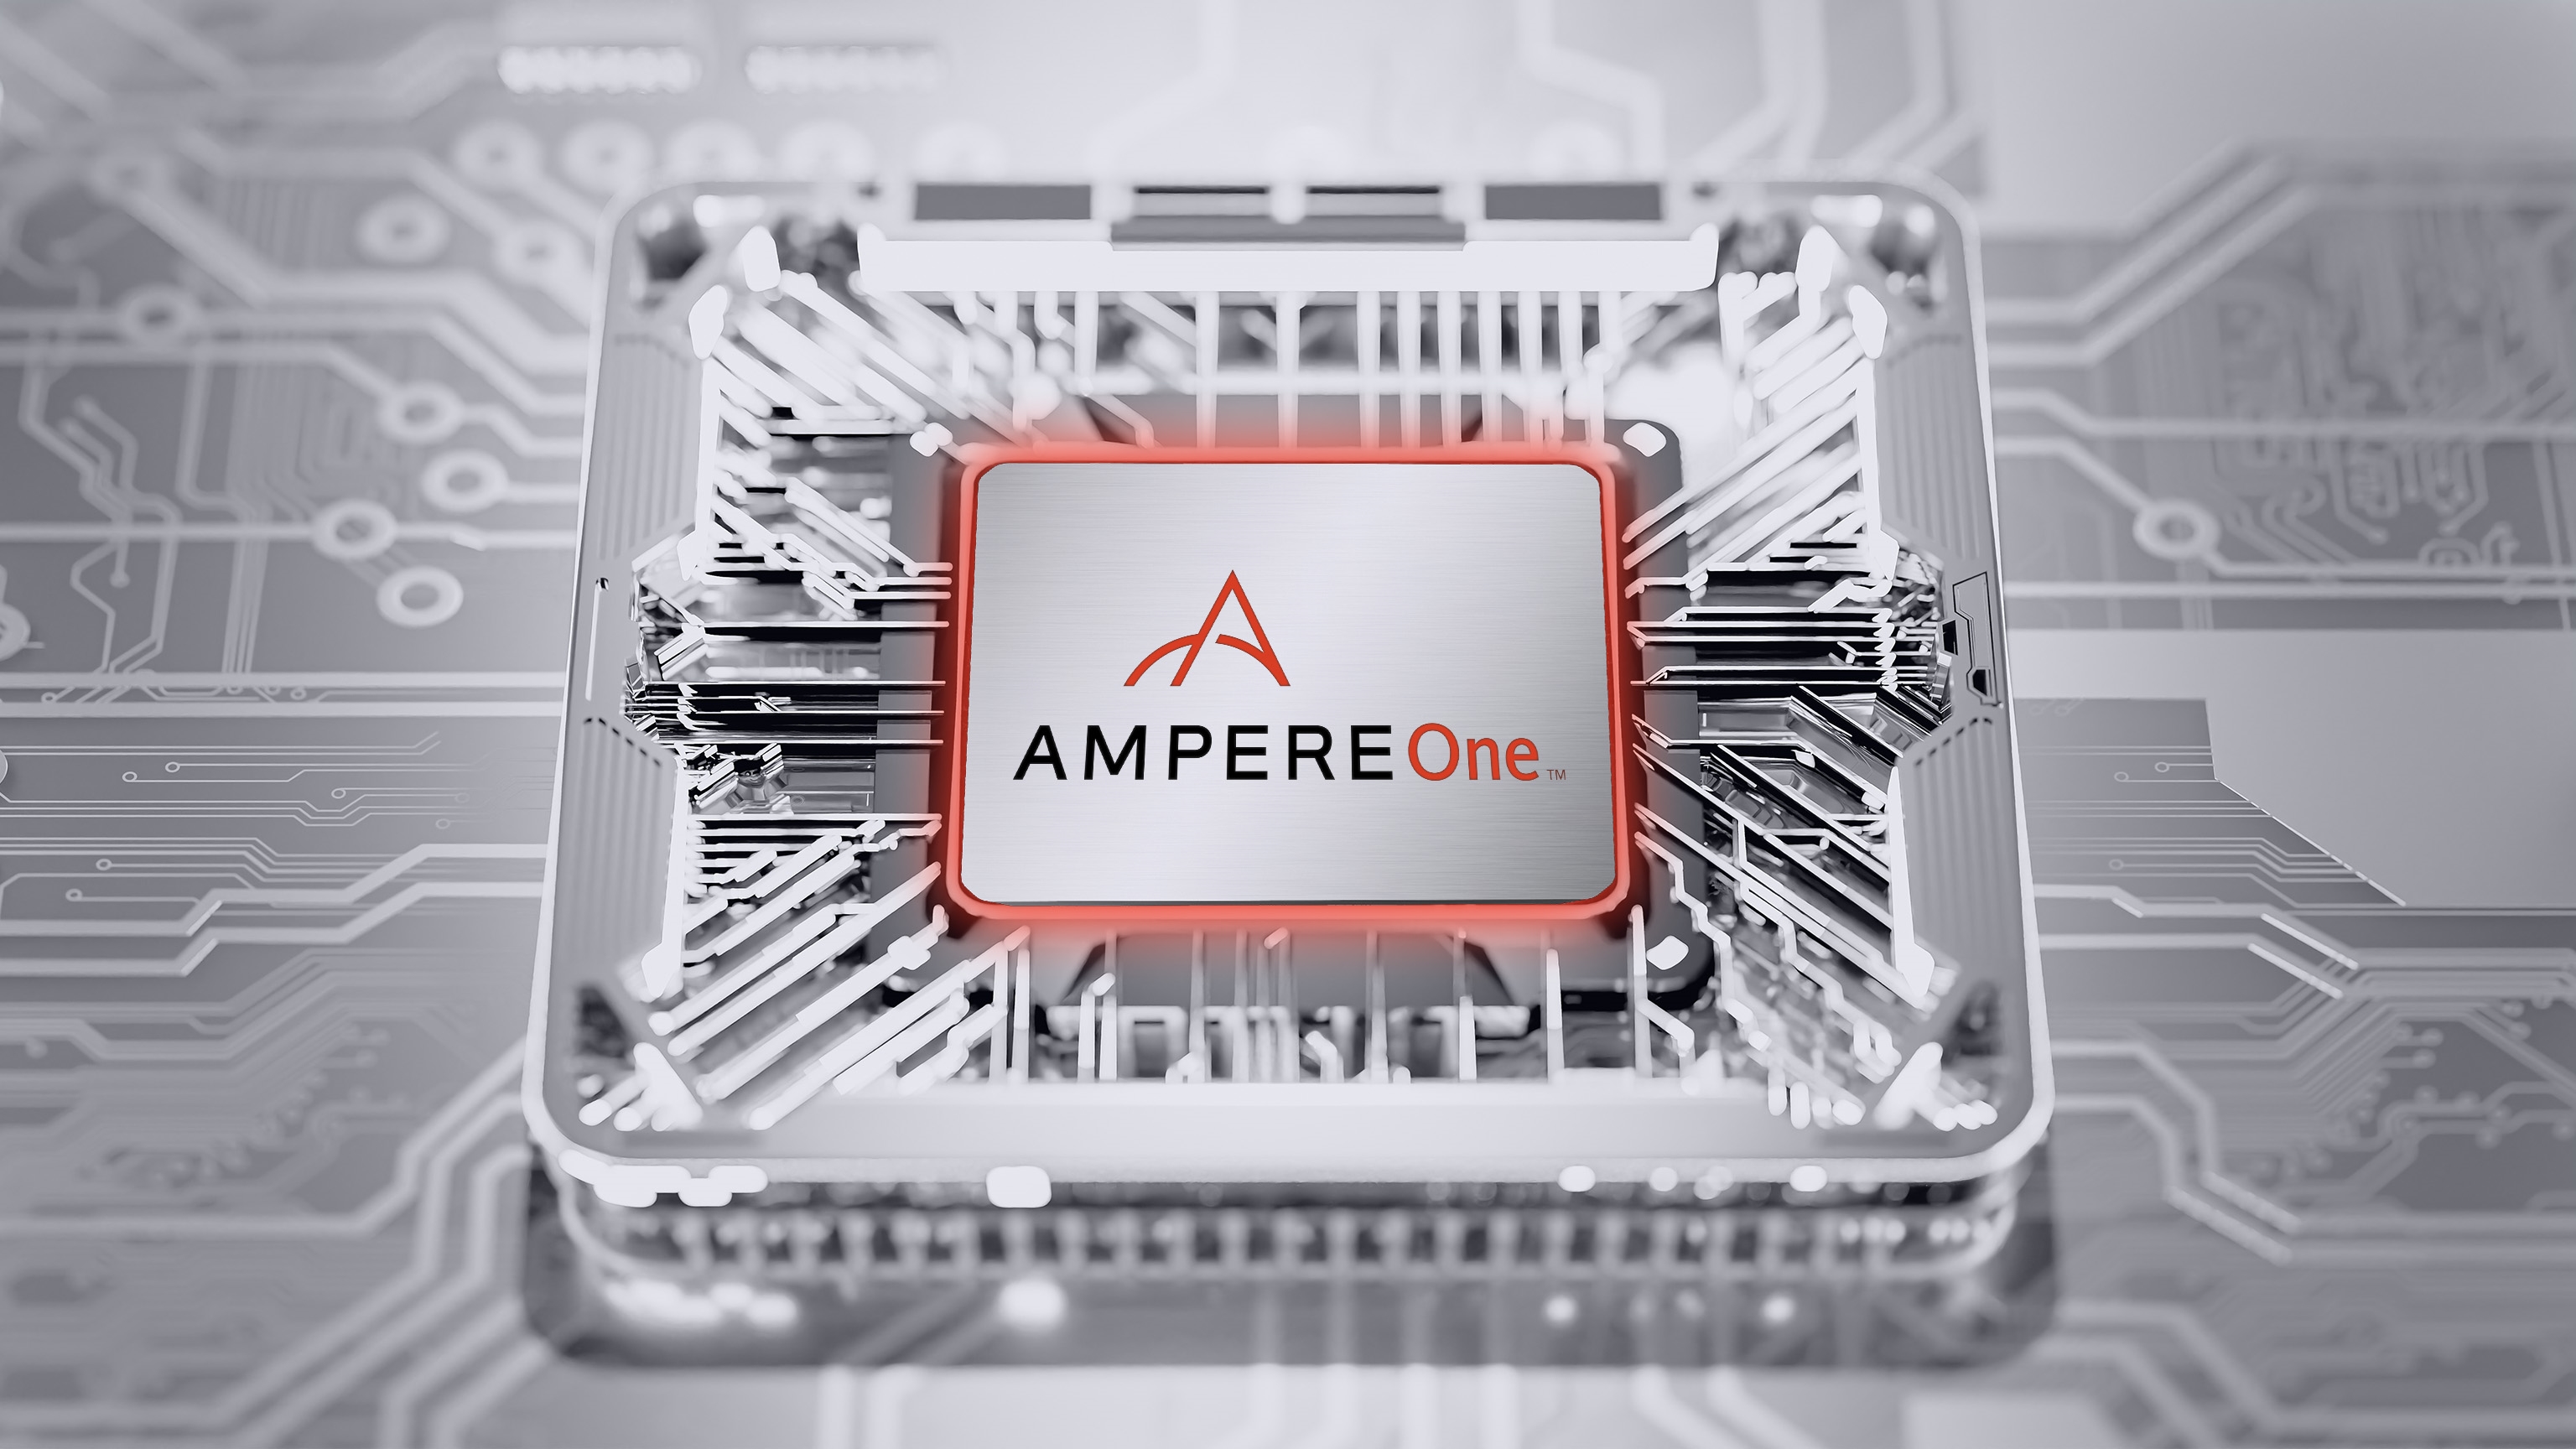 Vi xử lý 192 nhân của Ampere gặp vấn đề trên Linux ARM64 trong hệ thống hai ổ cắm, yêu cầu hỗ trợ số lượng nhân cao hơn